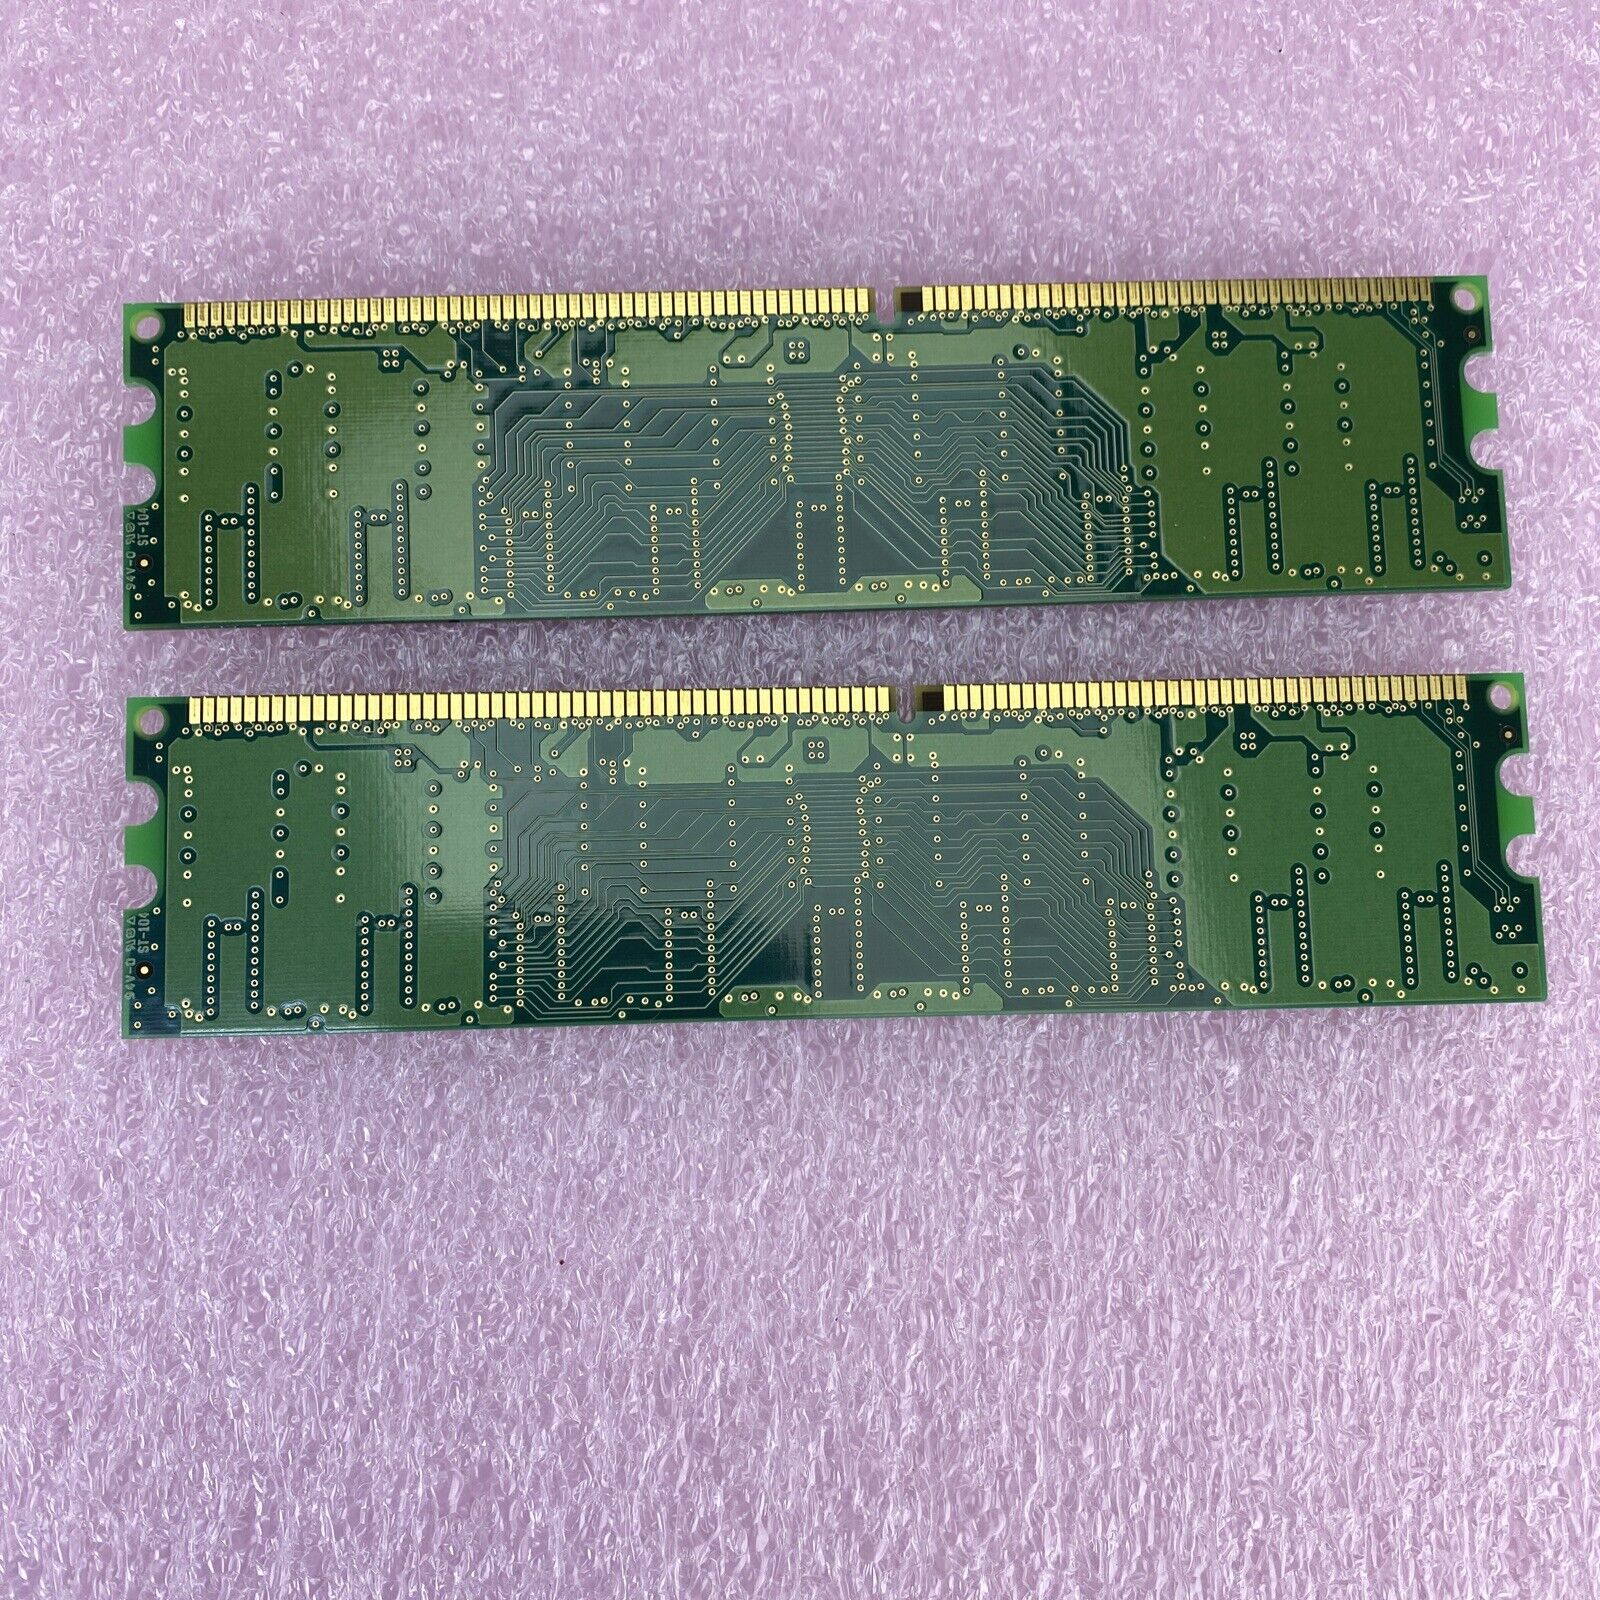 2x 256MB Samsung M368L3223DTL-CB0 PC-2100 DDR-266 RAM memory